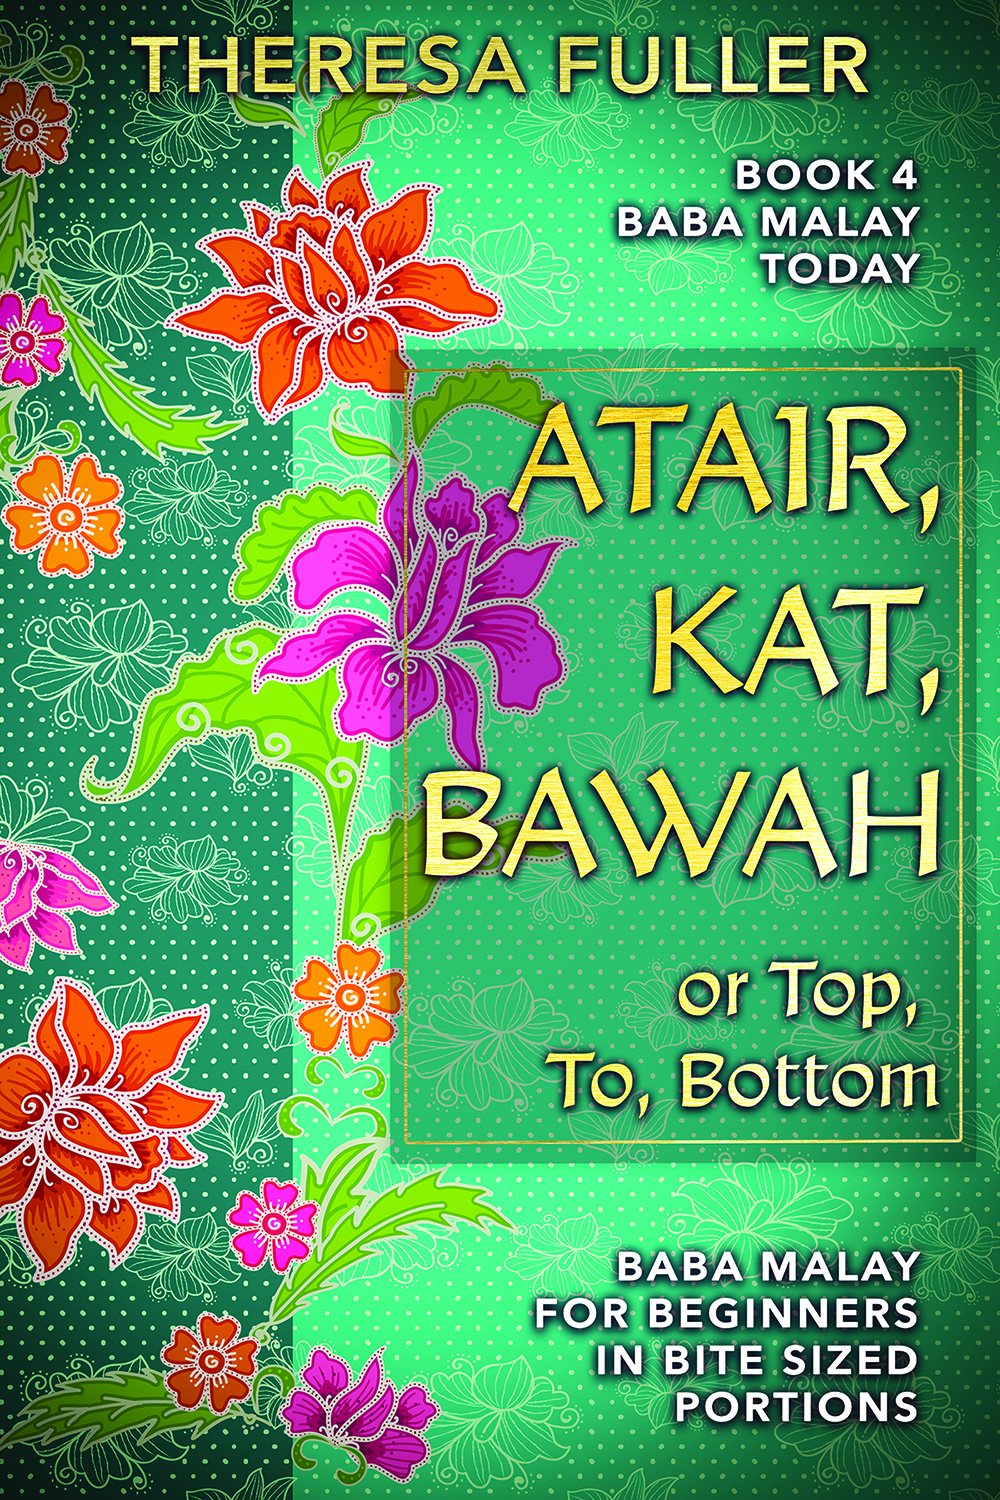 Atair, Kat, Bawah or Top, To, Bottom